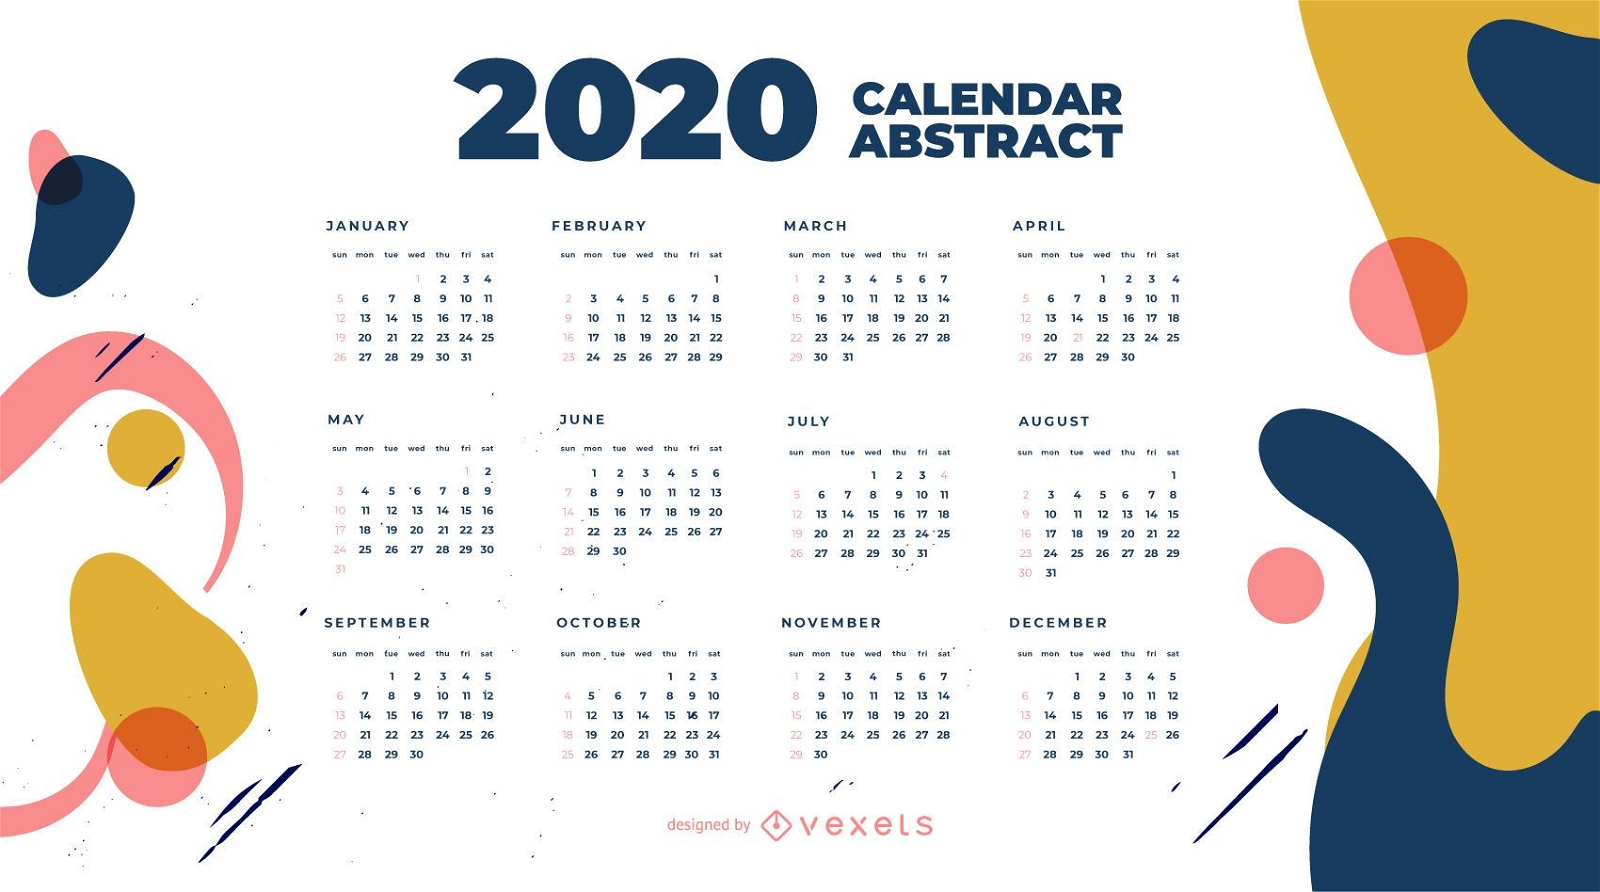 Year 2020 Abstract Calendar Design